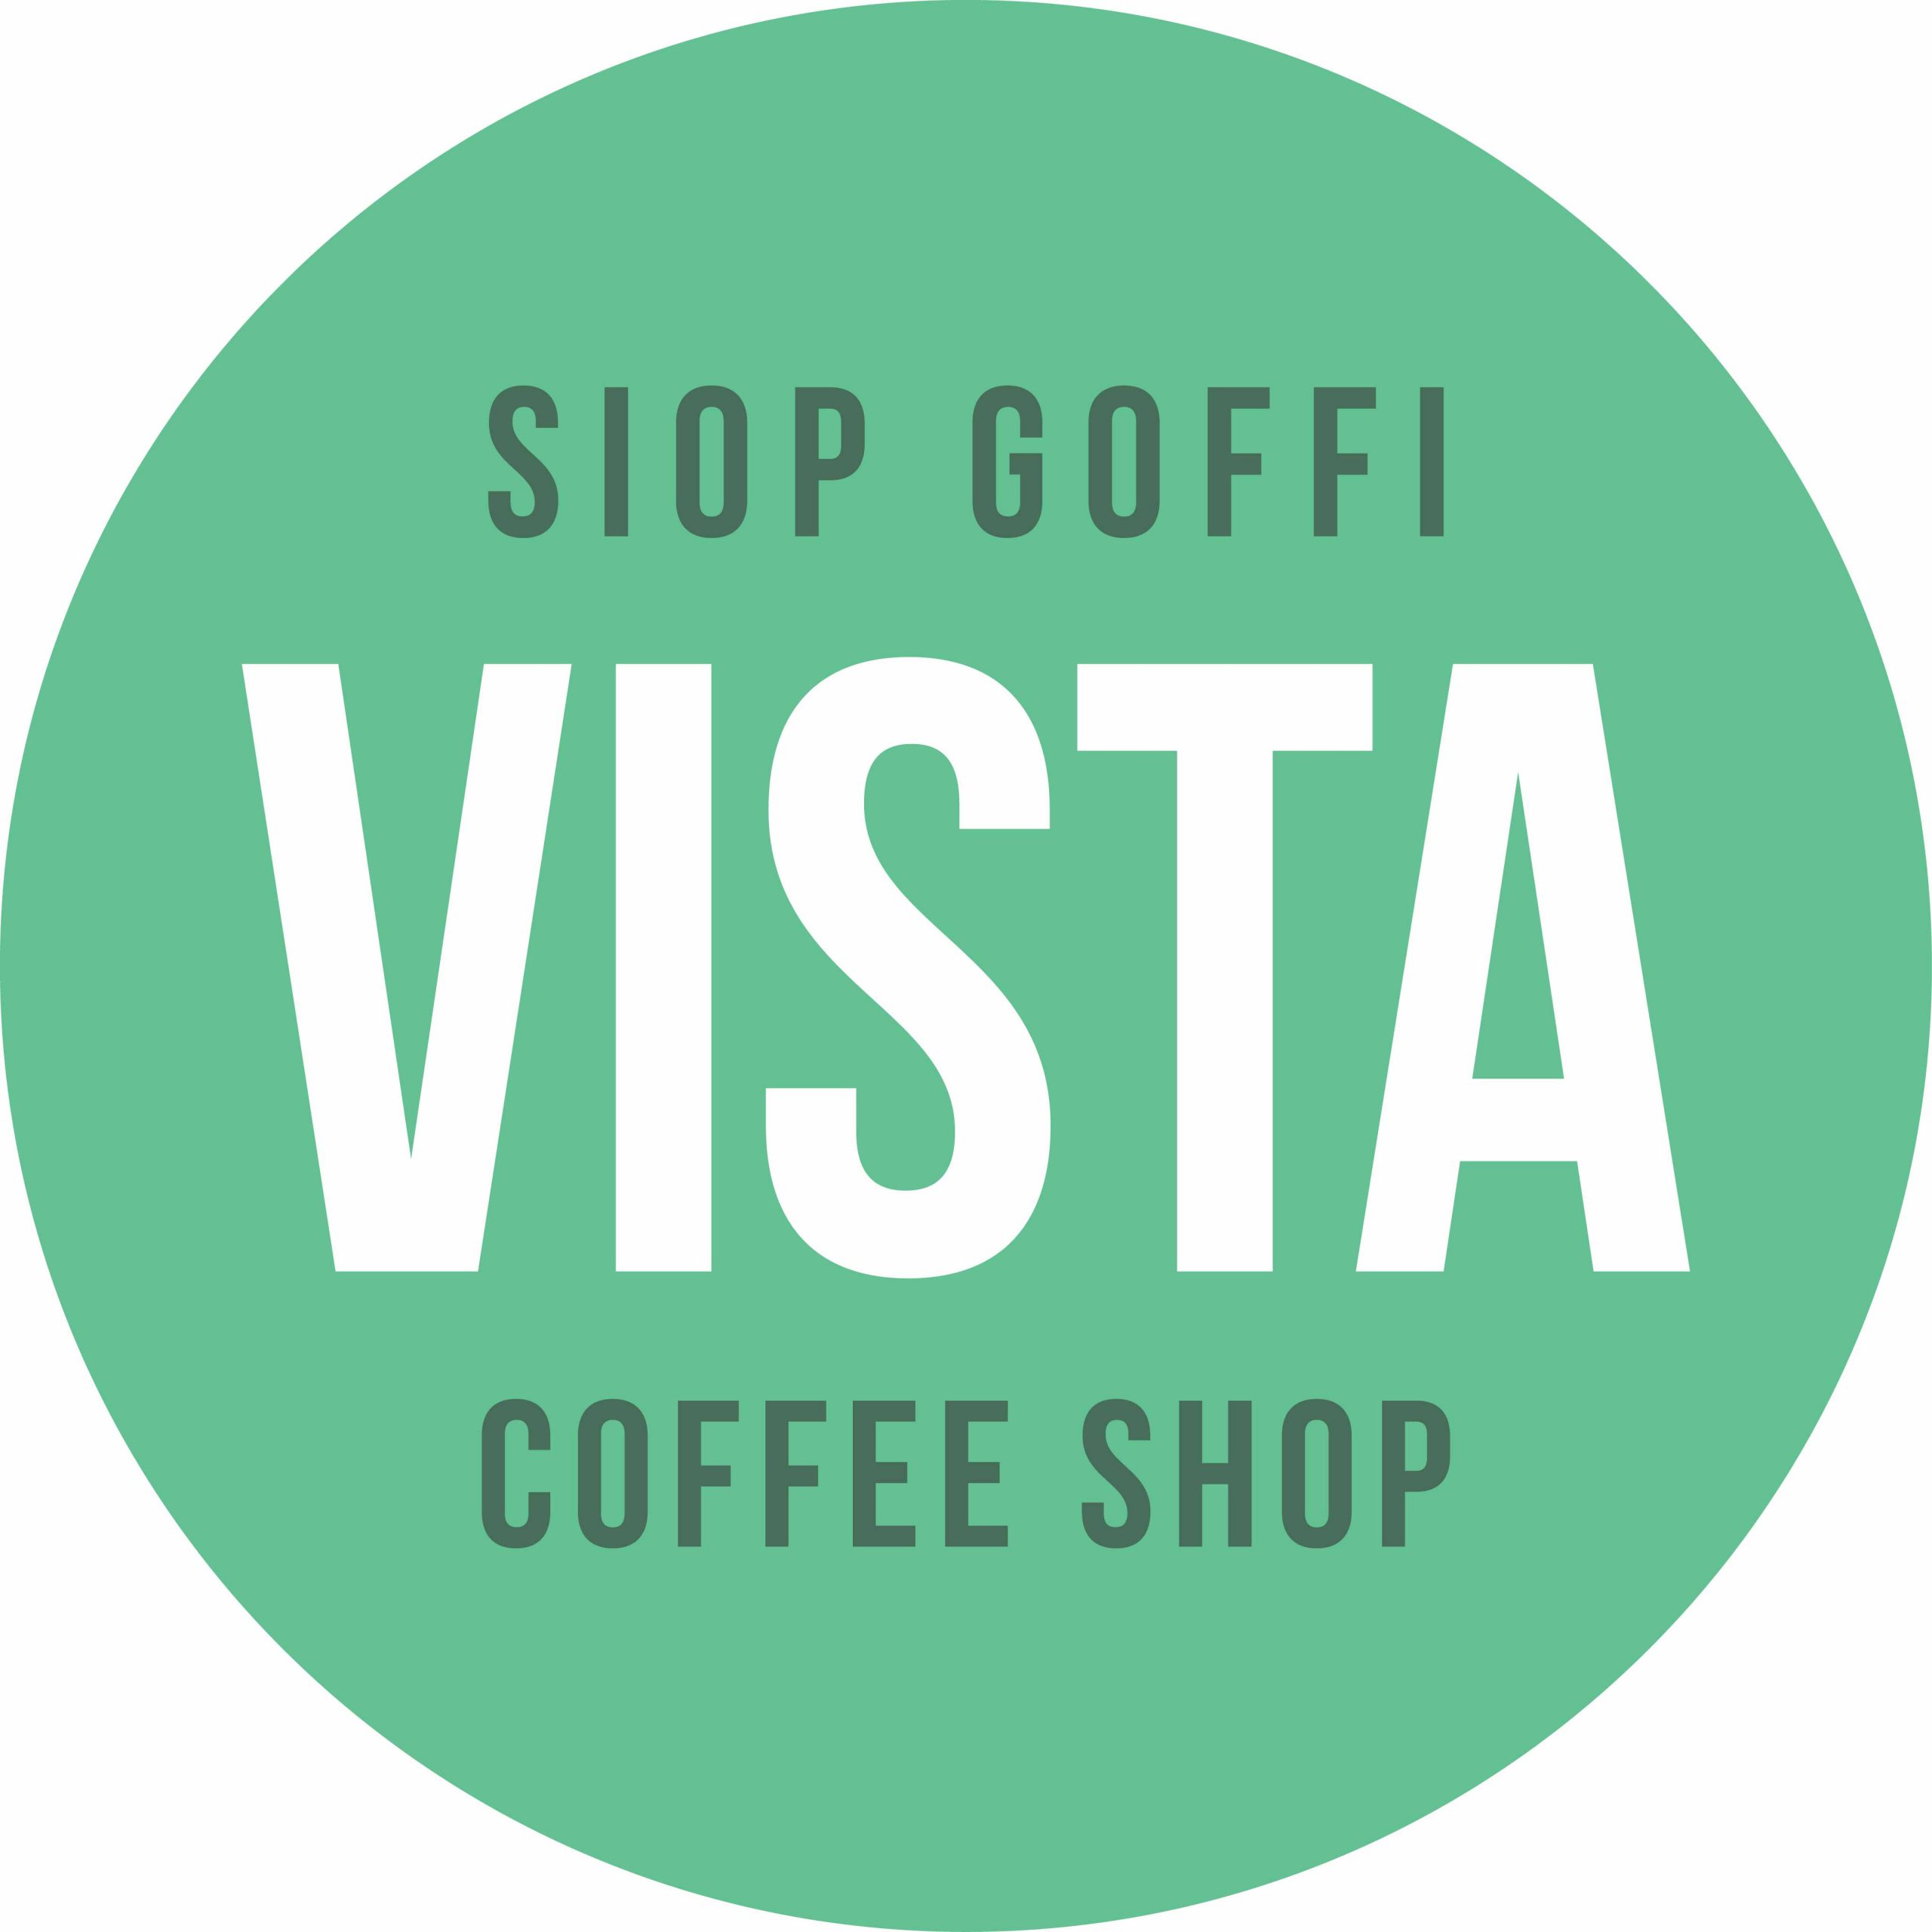 Vista Cafe Opportunity